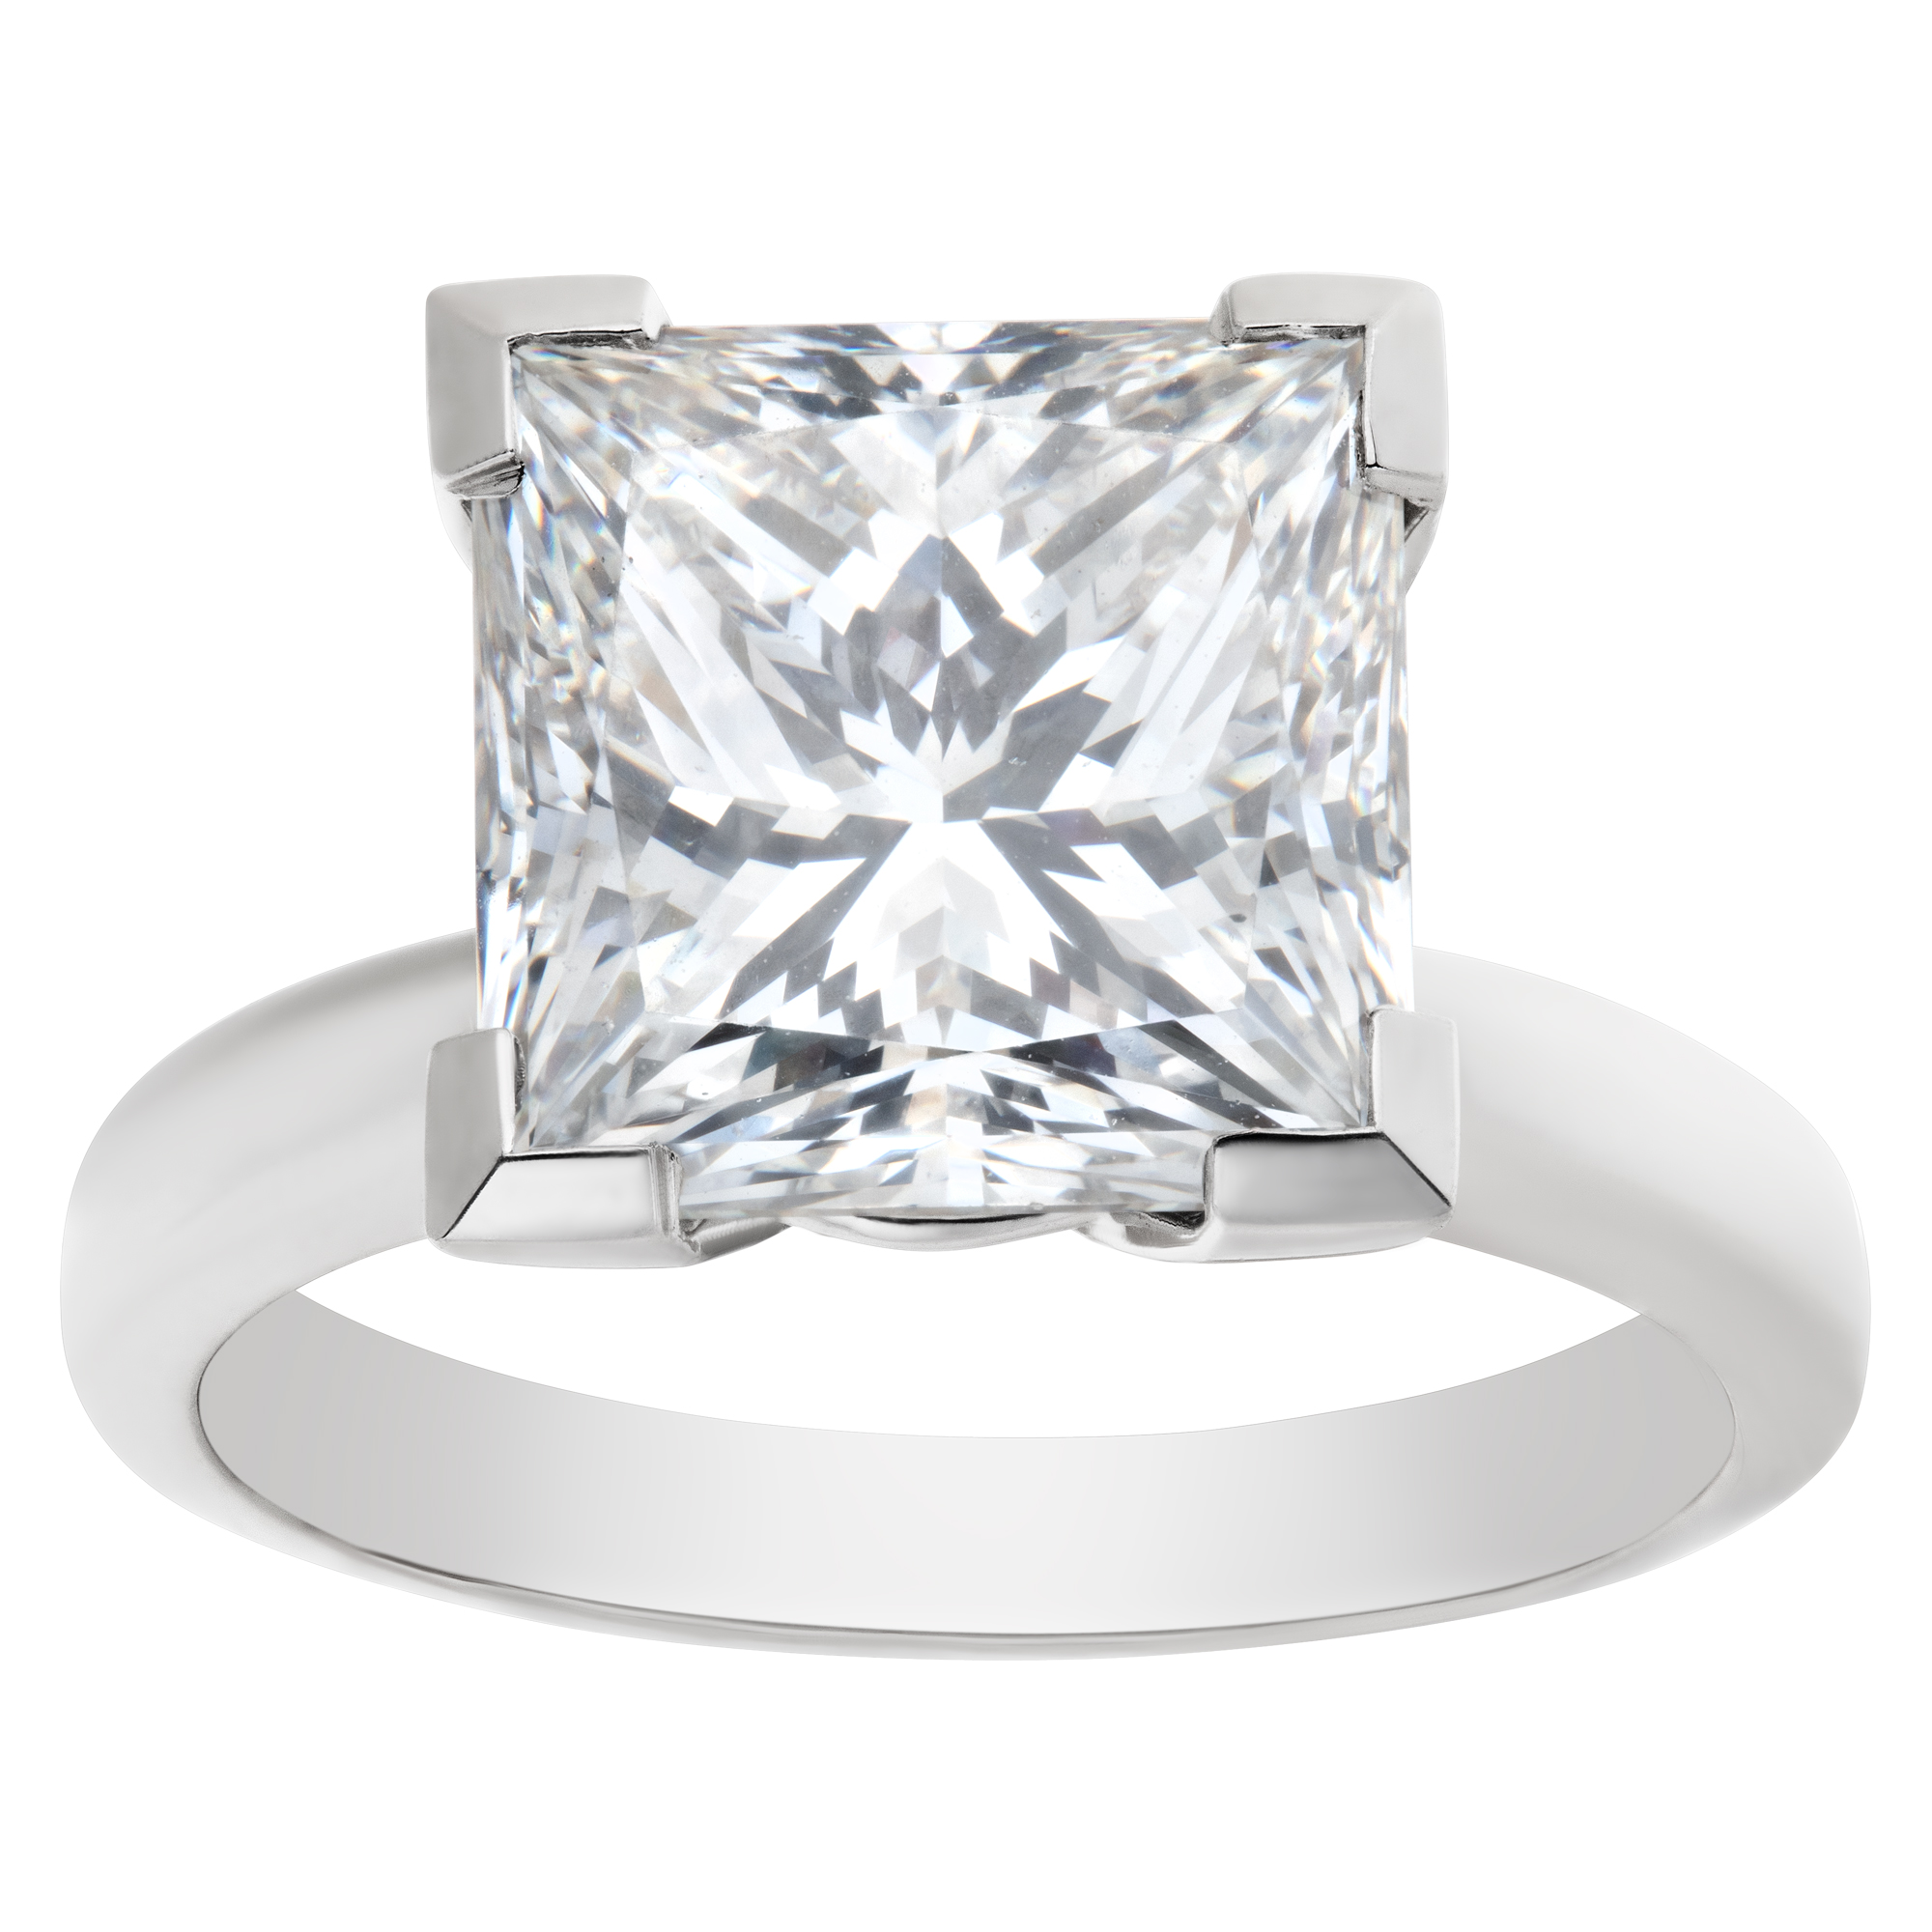 GIA certified square modified brilliant cut diamond 4.67 carat ( F color, VS2 clarity) ring